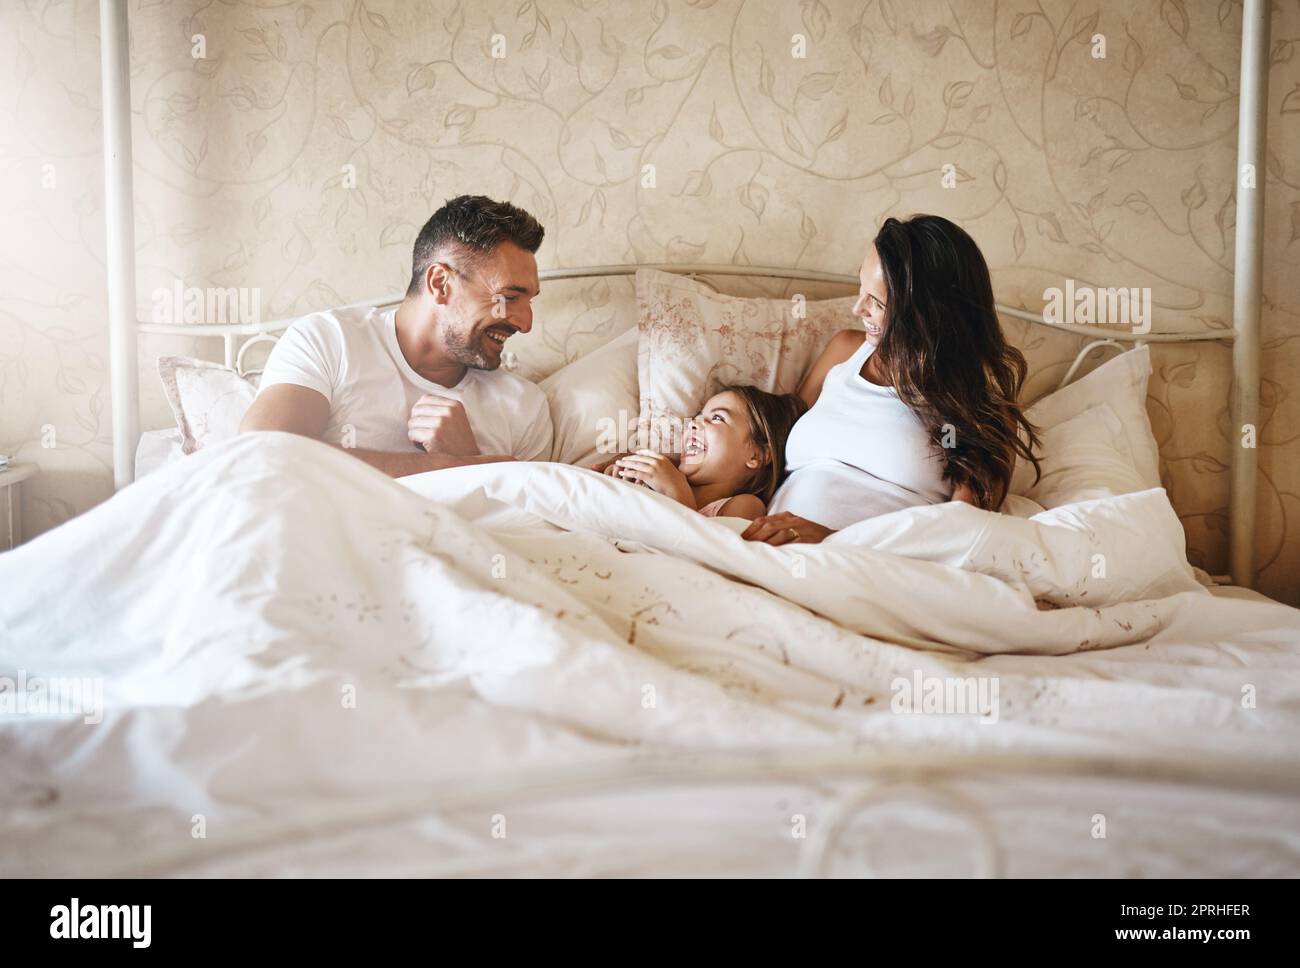 Nichts kommt einer liebevollen Familie nahe. Ein glückliches kleines Mädchen, das mit ihrem Vater und ihrer Schwangeren im Bett liegt. Stockfoto